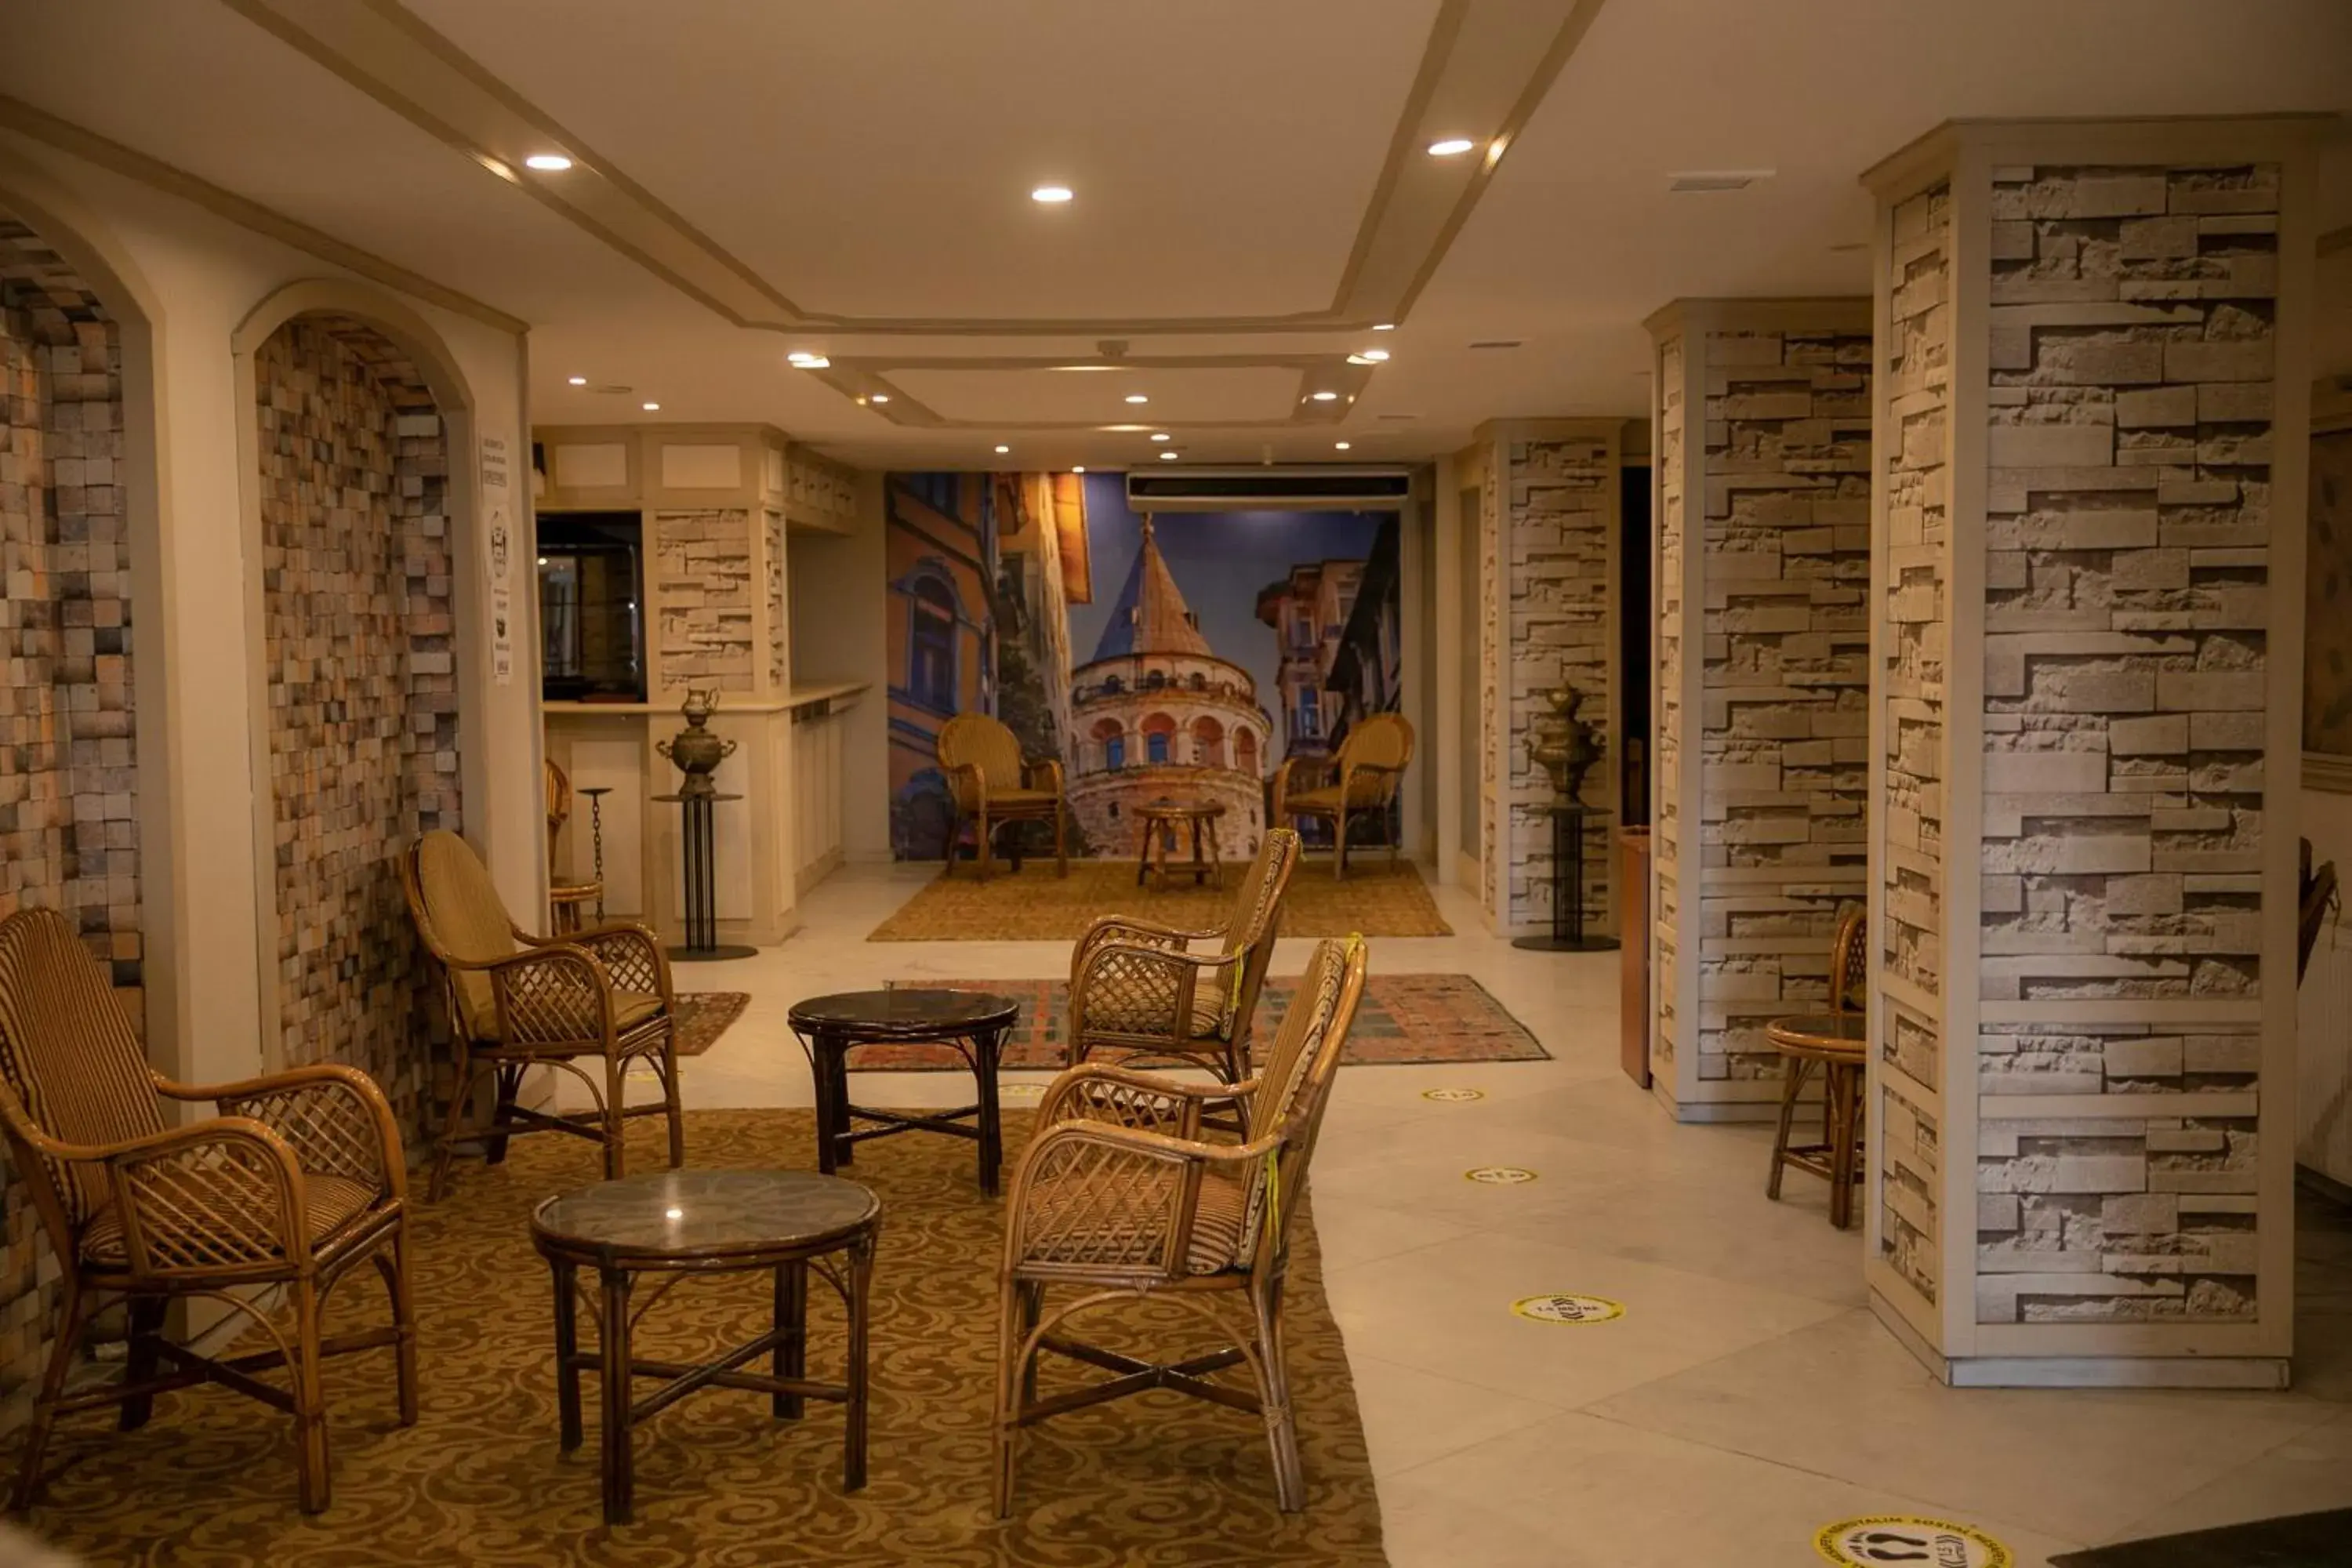 Lobby or reception in Hali Hotel